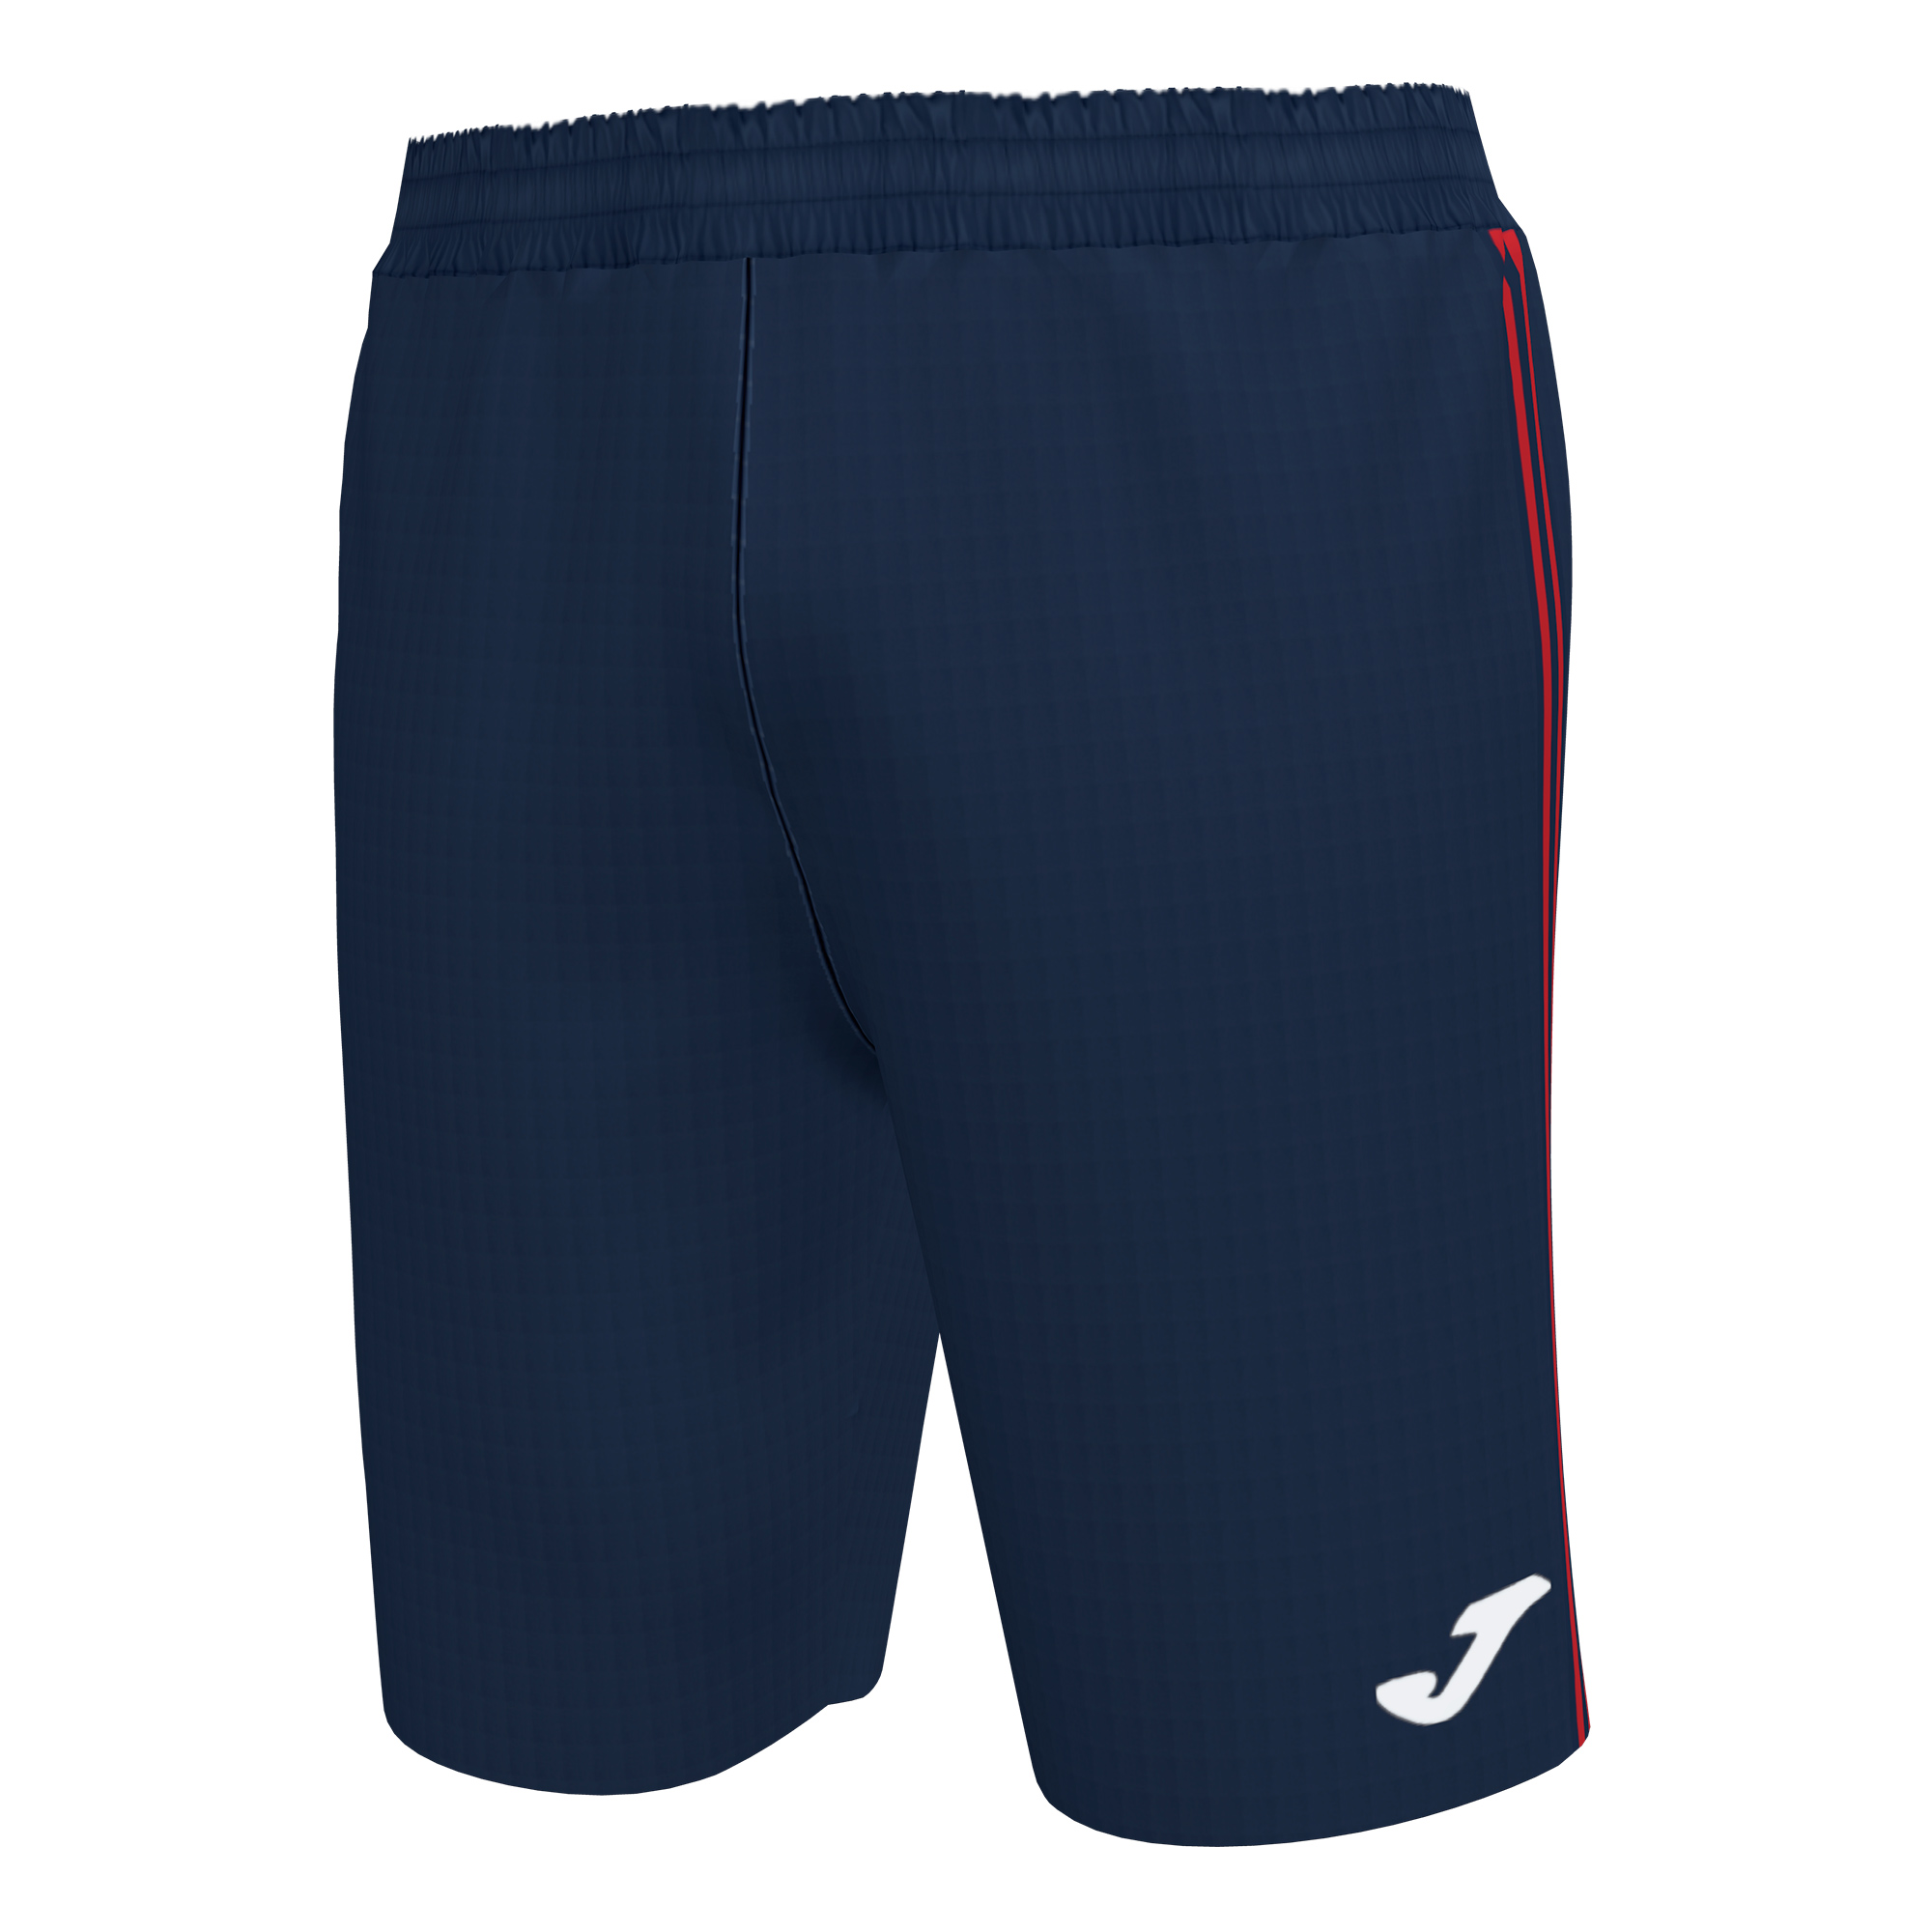 Волейбольные шорты мужские Joma CLASSIC BERMUDA Темно-синий/Красный